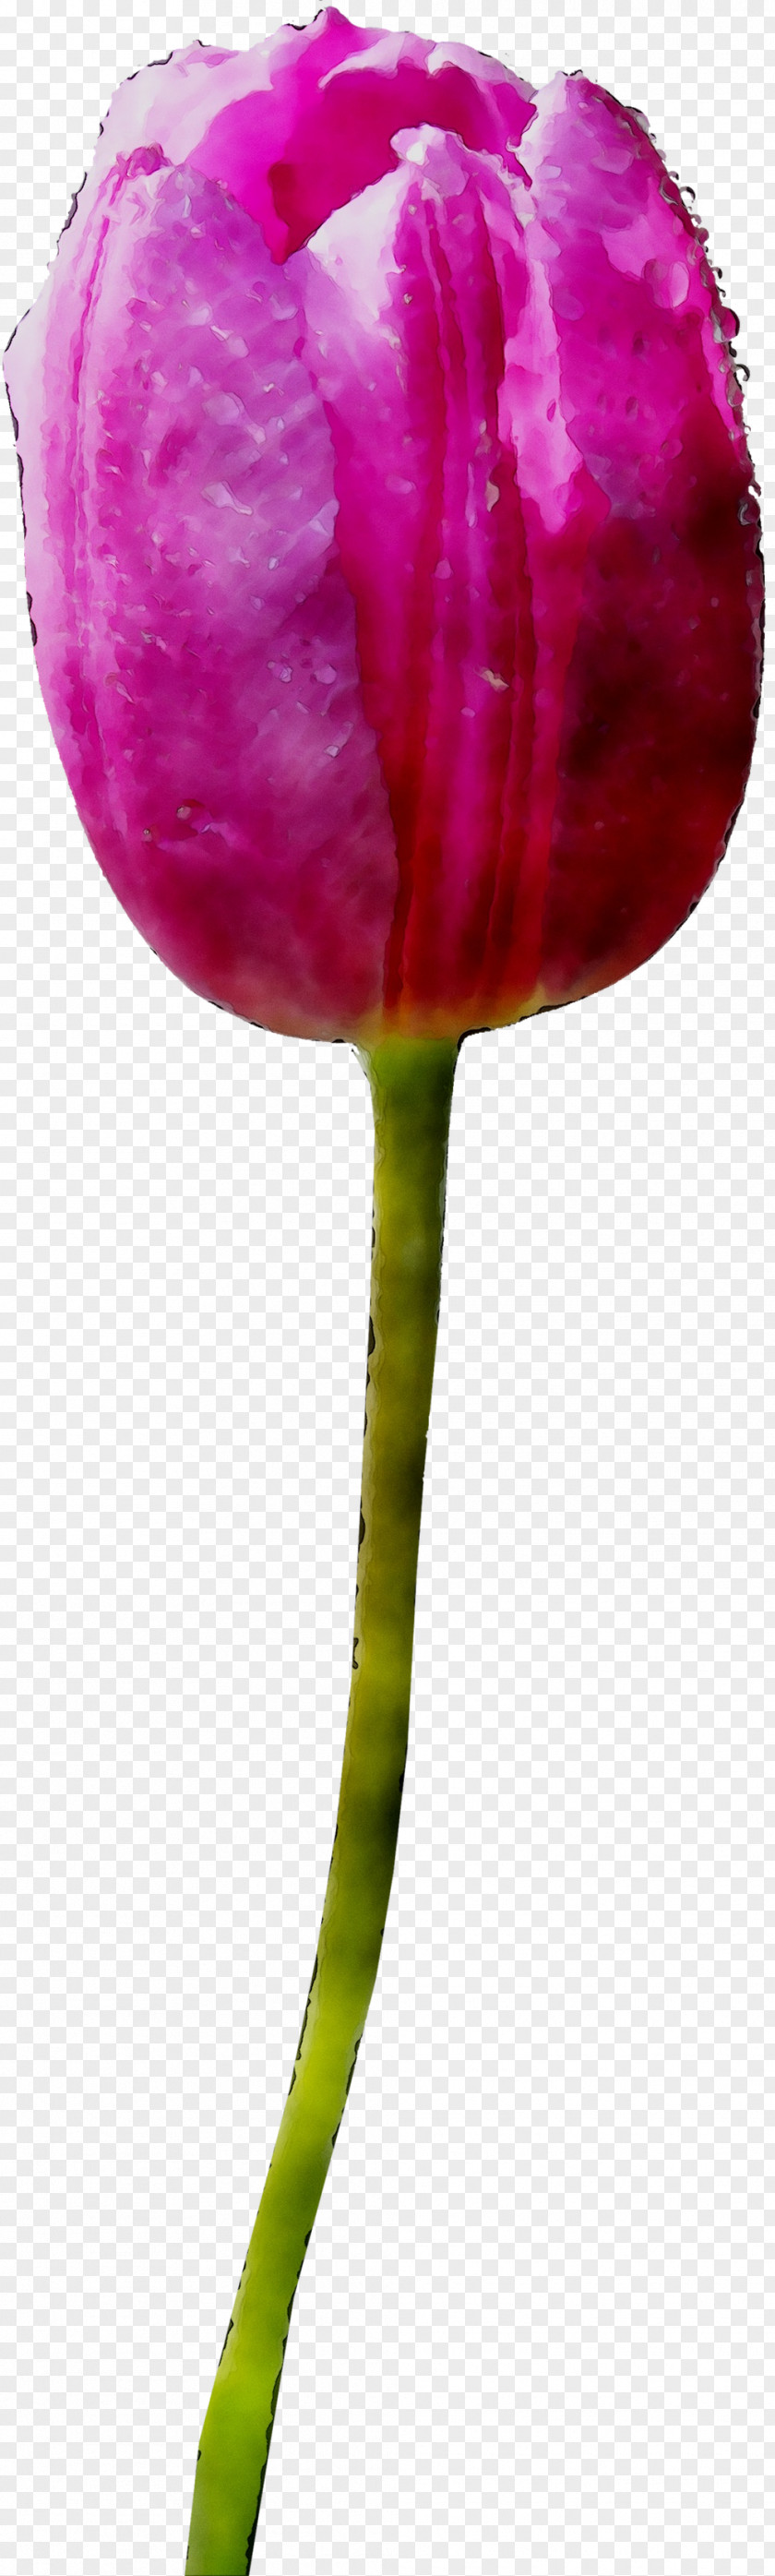 Tulip Plant Stem Cut Flowers Petal PNG